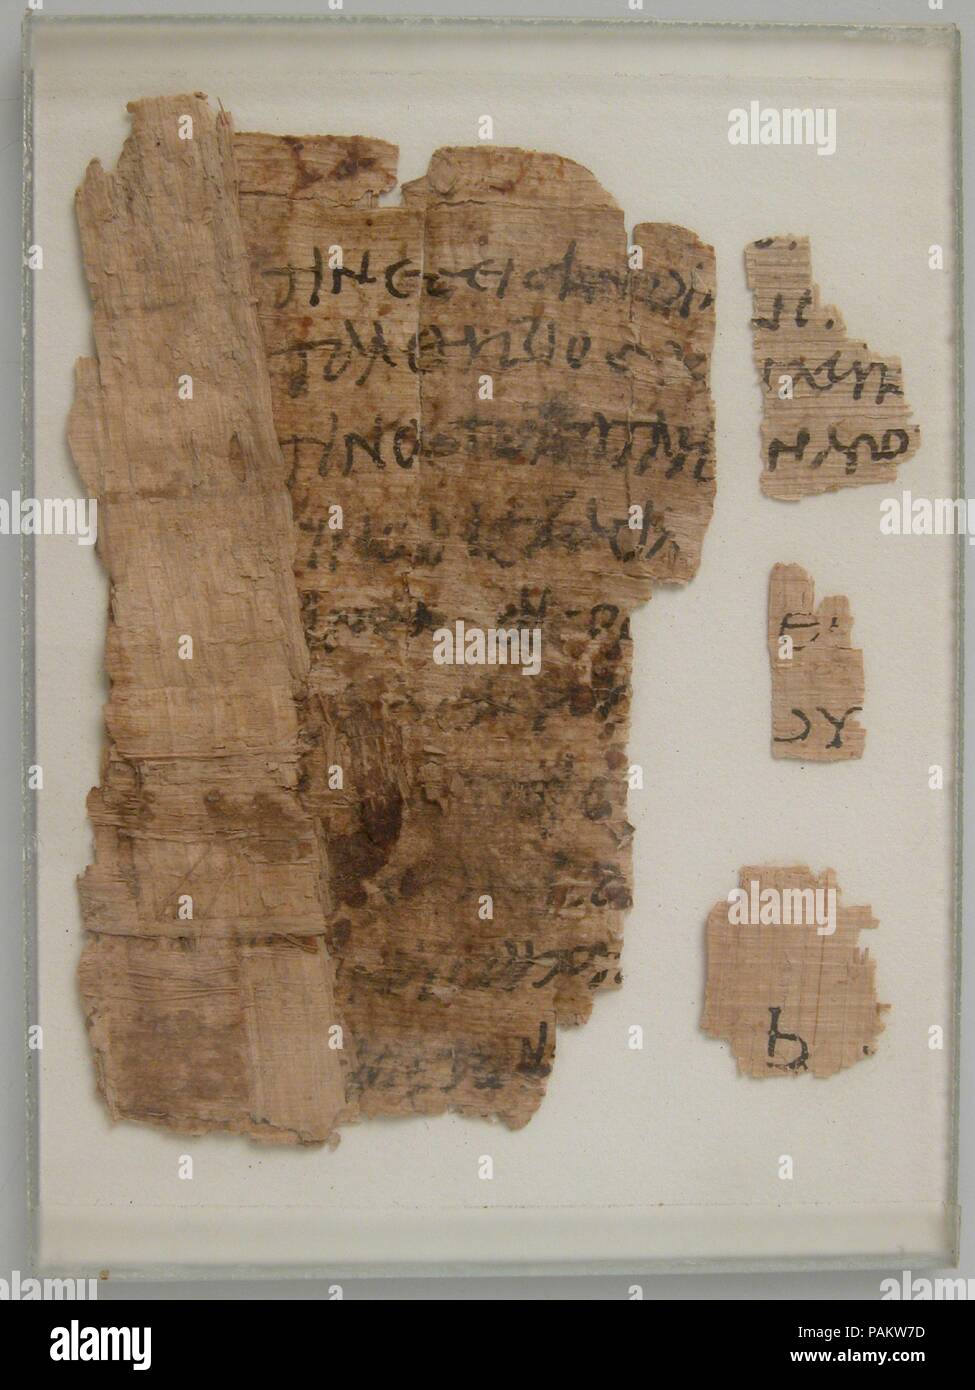 Frammenti di papiro. Cultura: copto. Dimensioni: incorniciato: 4 x 2 15/16 in. (10,1 x 7,5 cm). Data: 4-VII secolo. Museo: Metropolitan Museum of Art di New York, Stati Uniti d'America. Foto Stock